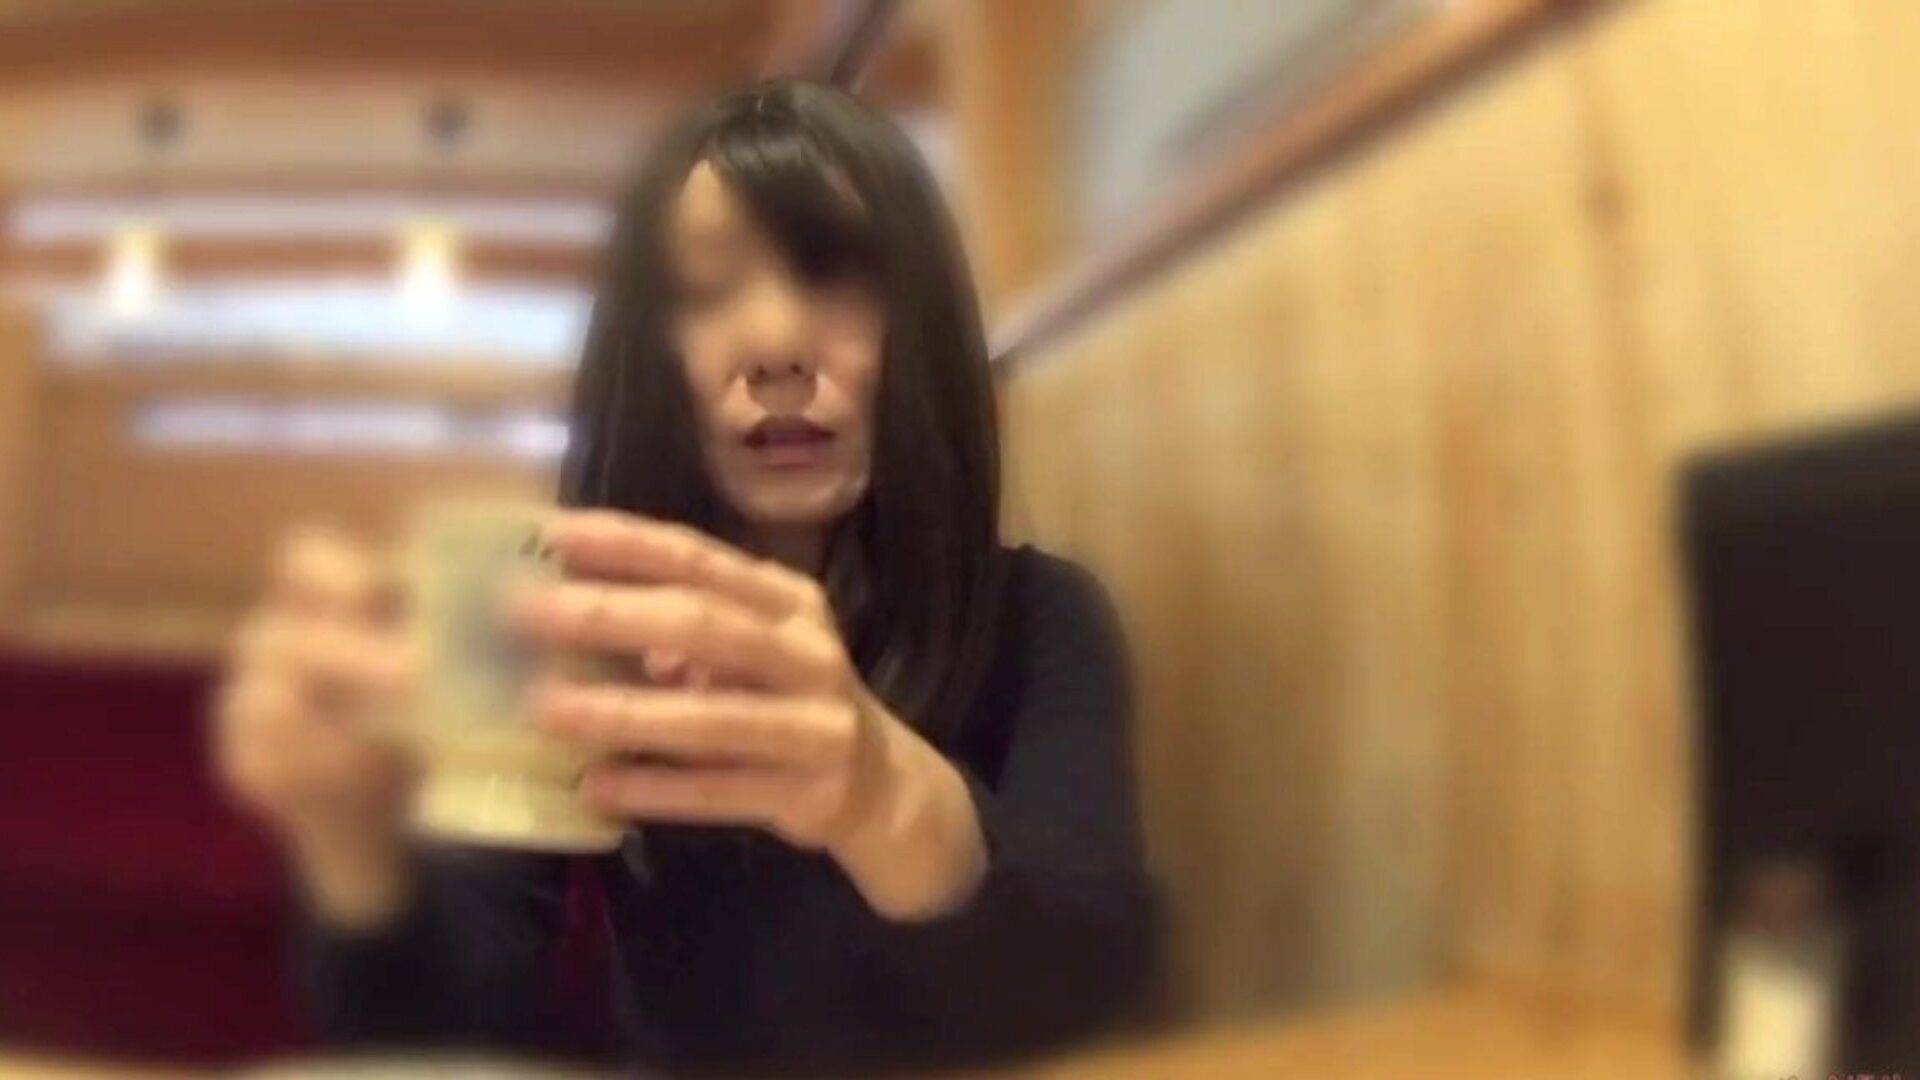 hanreiekone tok av seg trusa på kafeen: gratis porno 60 se hanekone tok av seg trusa i kafeen video på xhamster - den ultimate mengden gratis asiatisk japansk hd videoer med gonzo porno